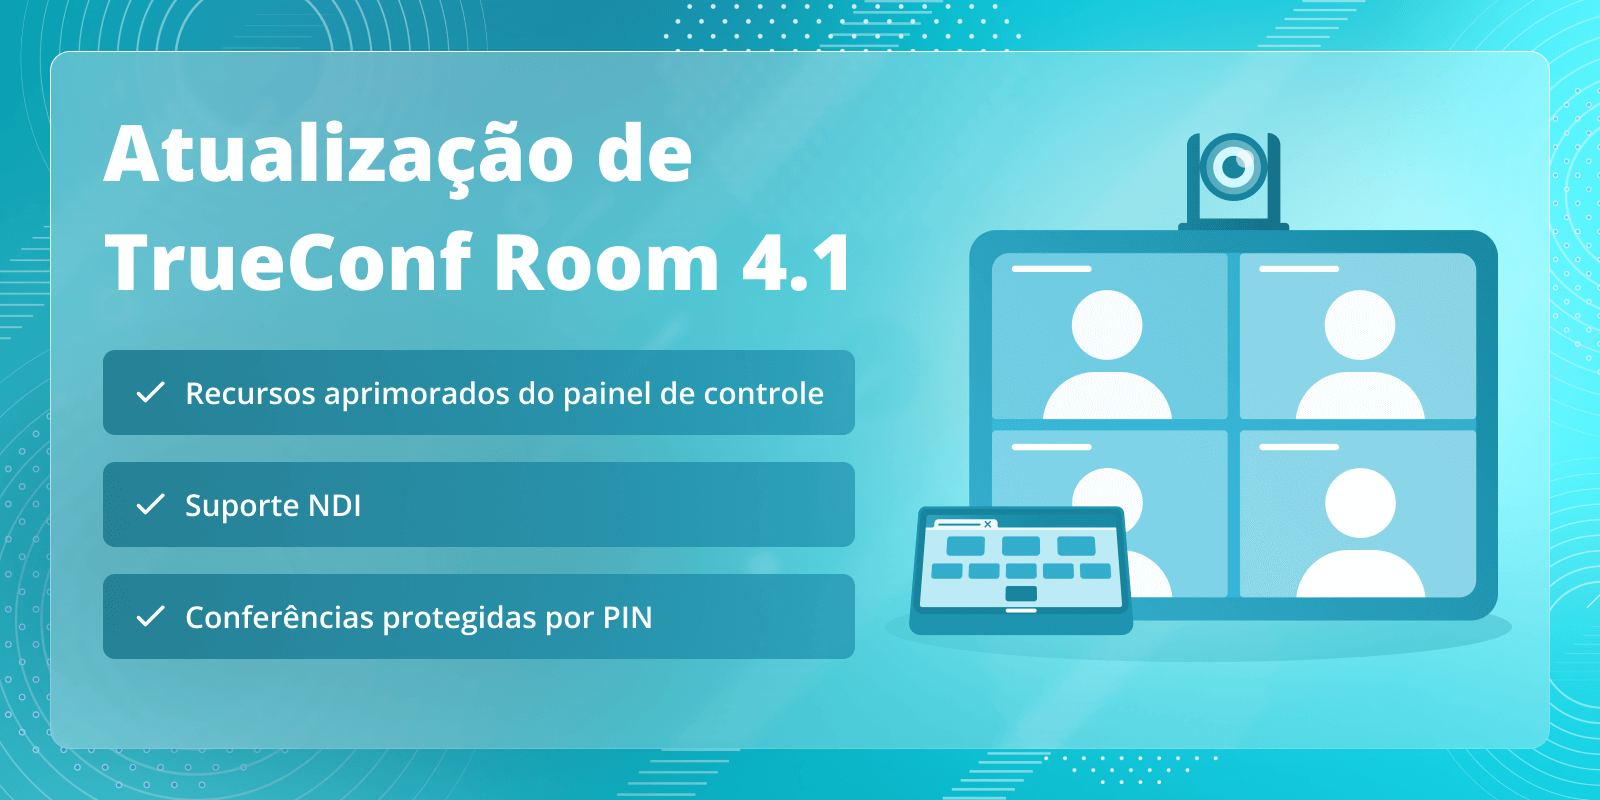 TrueConf Room 4.1: recursos aprimorados do painel de controle, suporte NDI e conferências protegidas por PIN 4